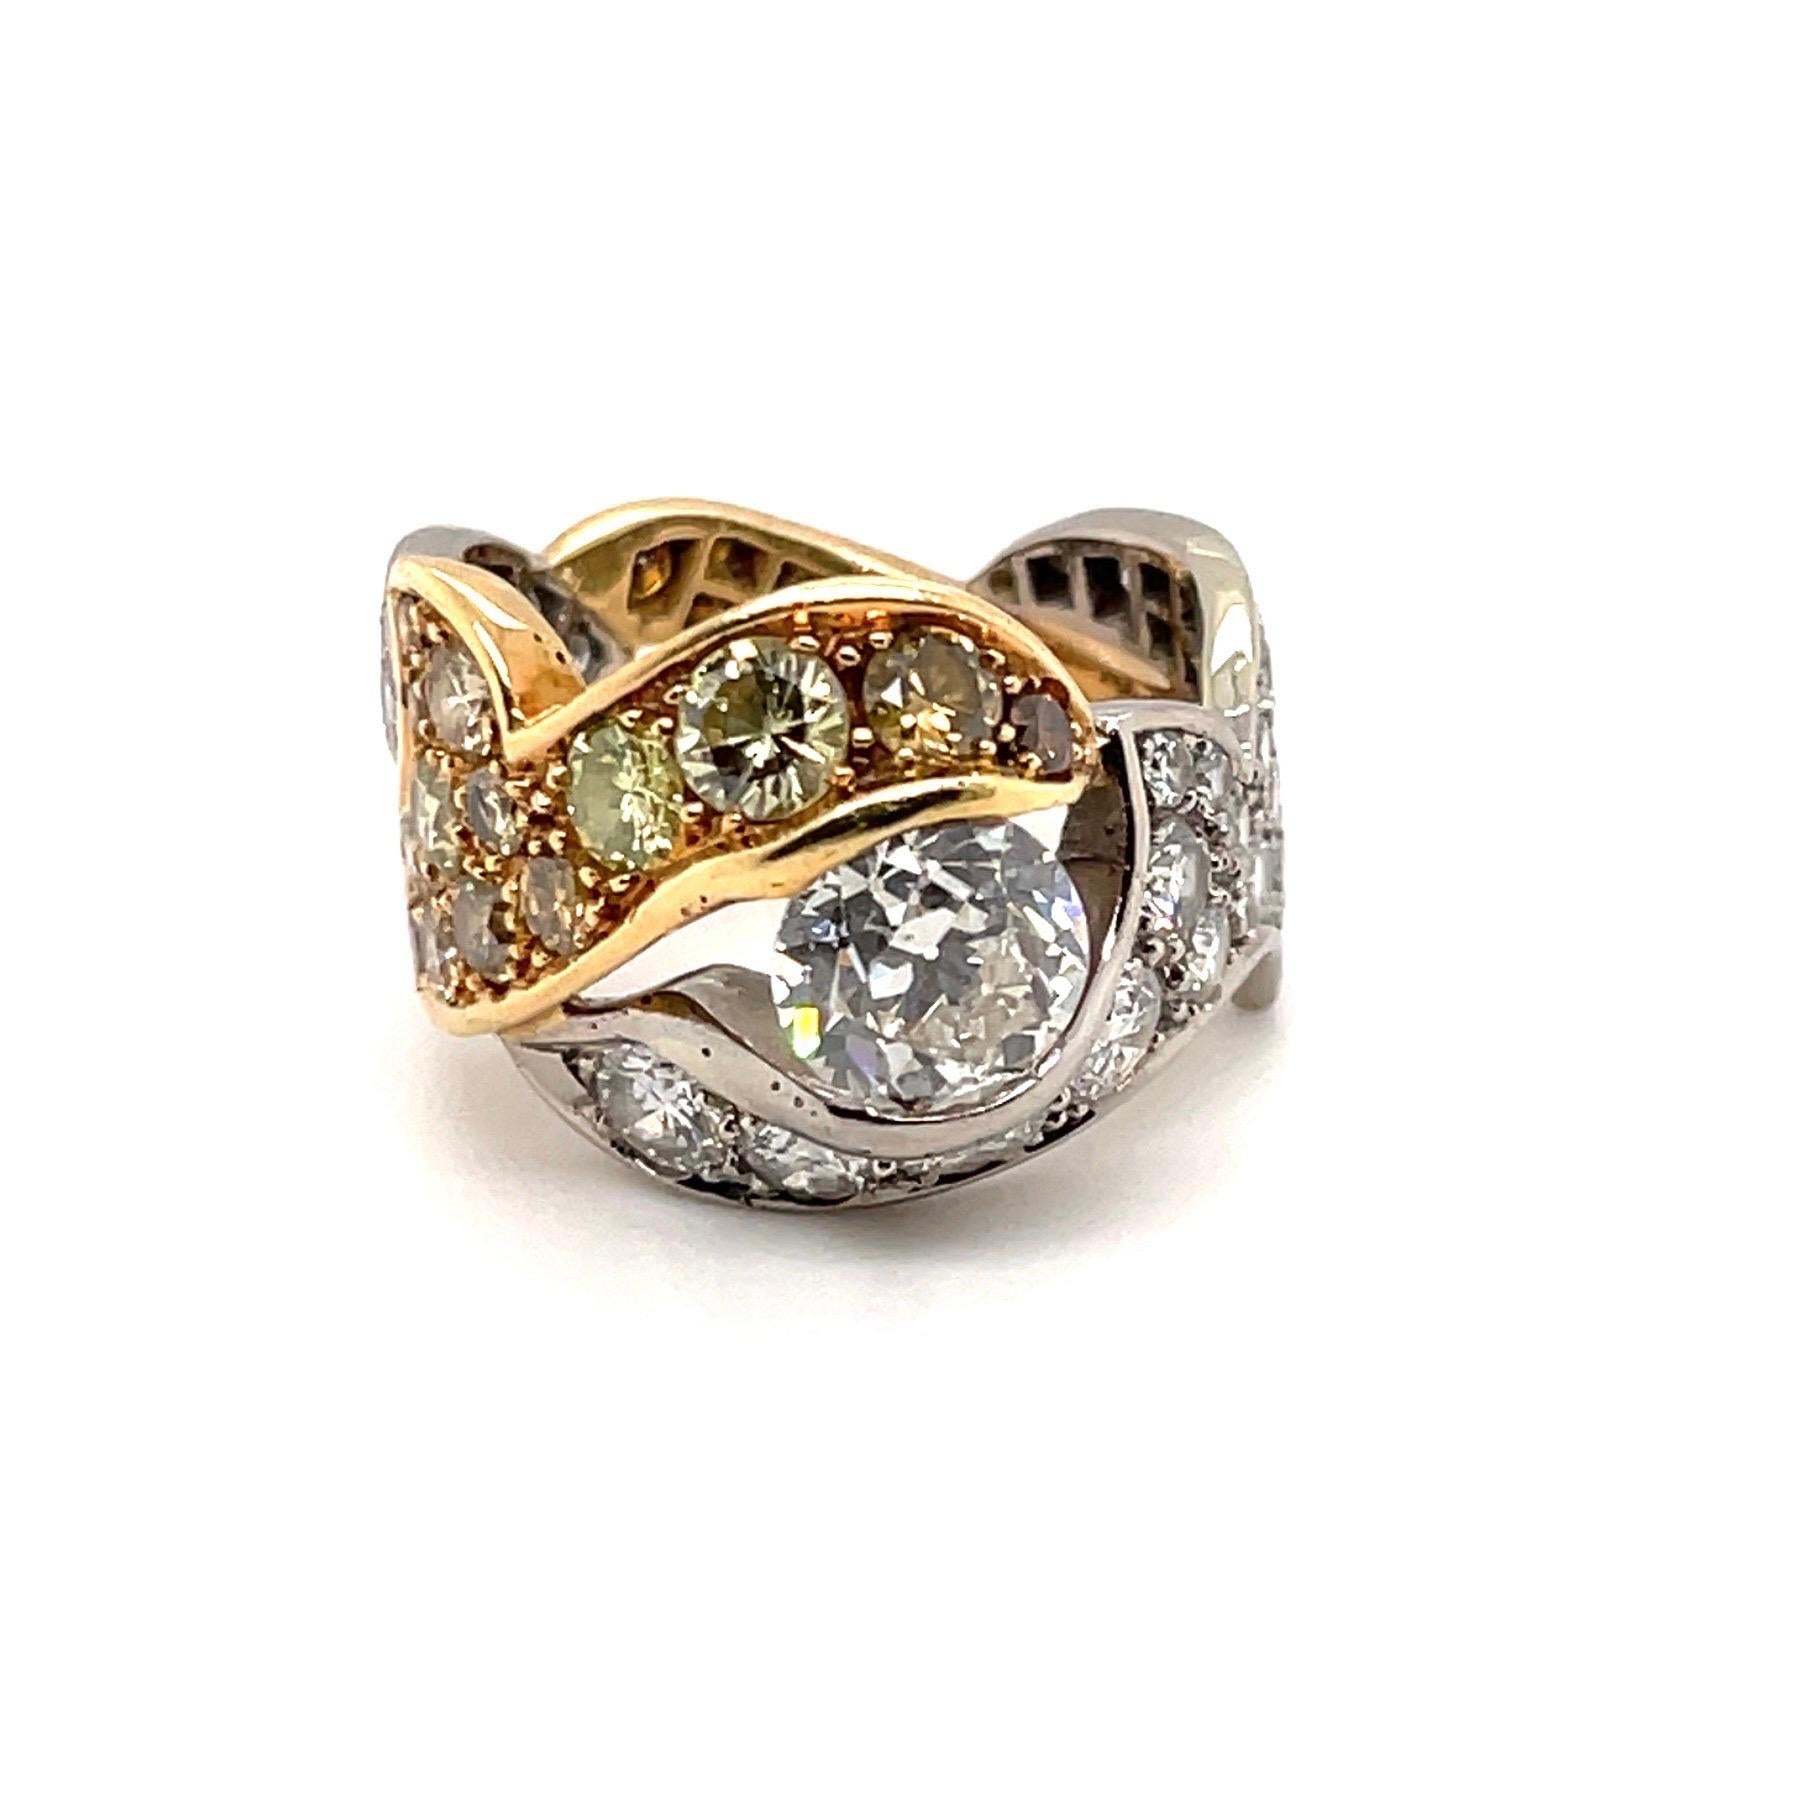 Eleganter Solitär-Diamantring aus 18 Karat Gelb- und Weißgold.

Auffälliger Ring in Form einer Reihe von ineinander verschlungenen, zweifarbigen Blumenmotiven, die mit weißen bzw. champagner- und cognacfarbenen Brillanten in Pavé-Fassung besetzt